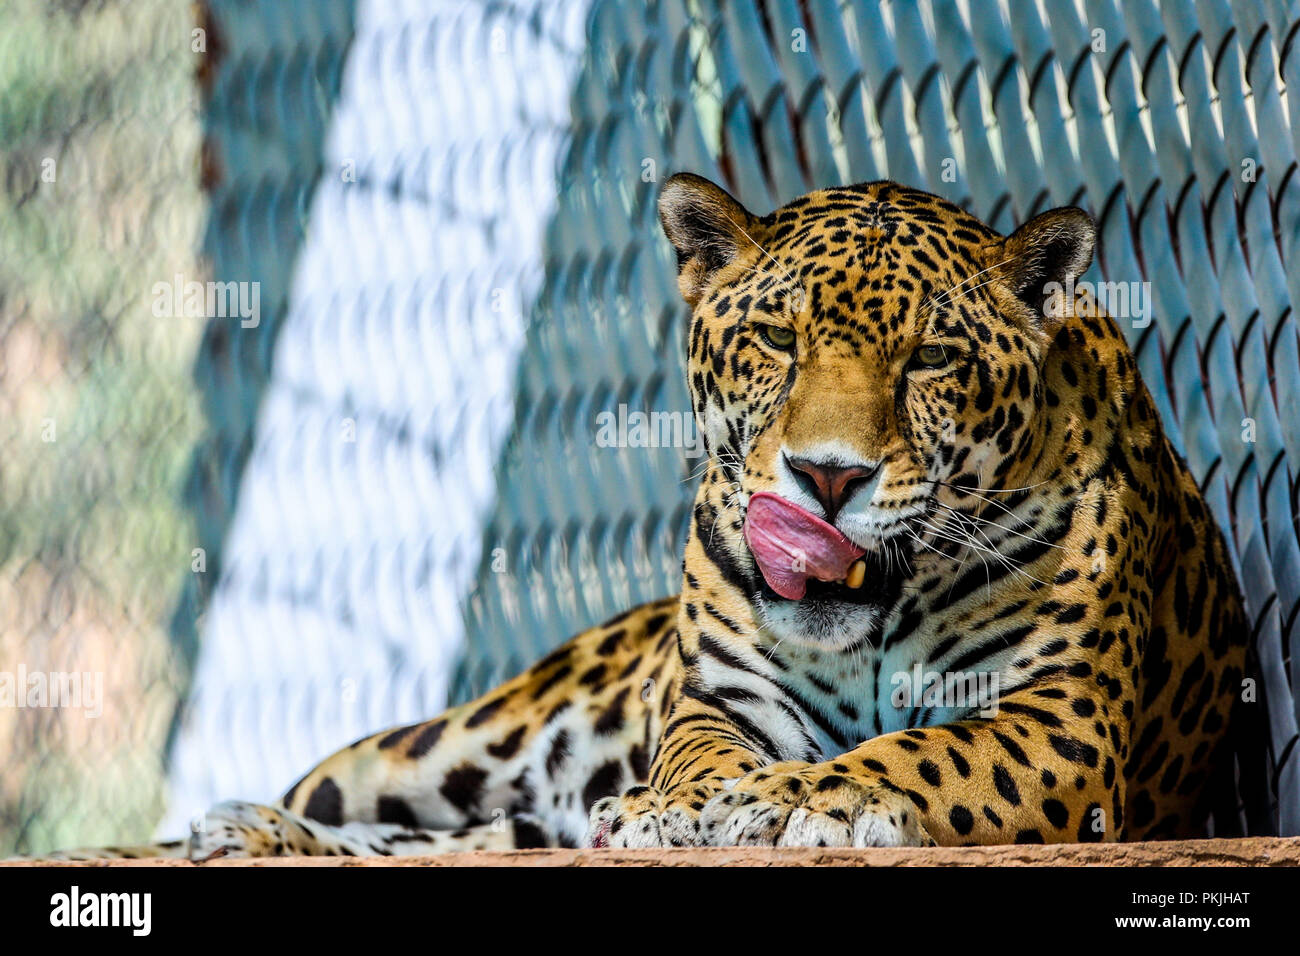 Jaguar in cattività, zoo. Felina, di mammifero, il gatto selvatico, carnivoro, predator, animale, cat Foto Stock